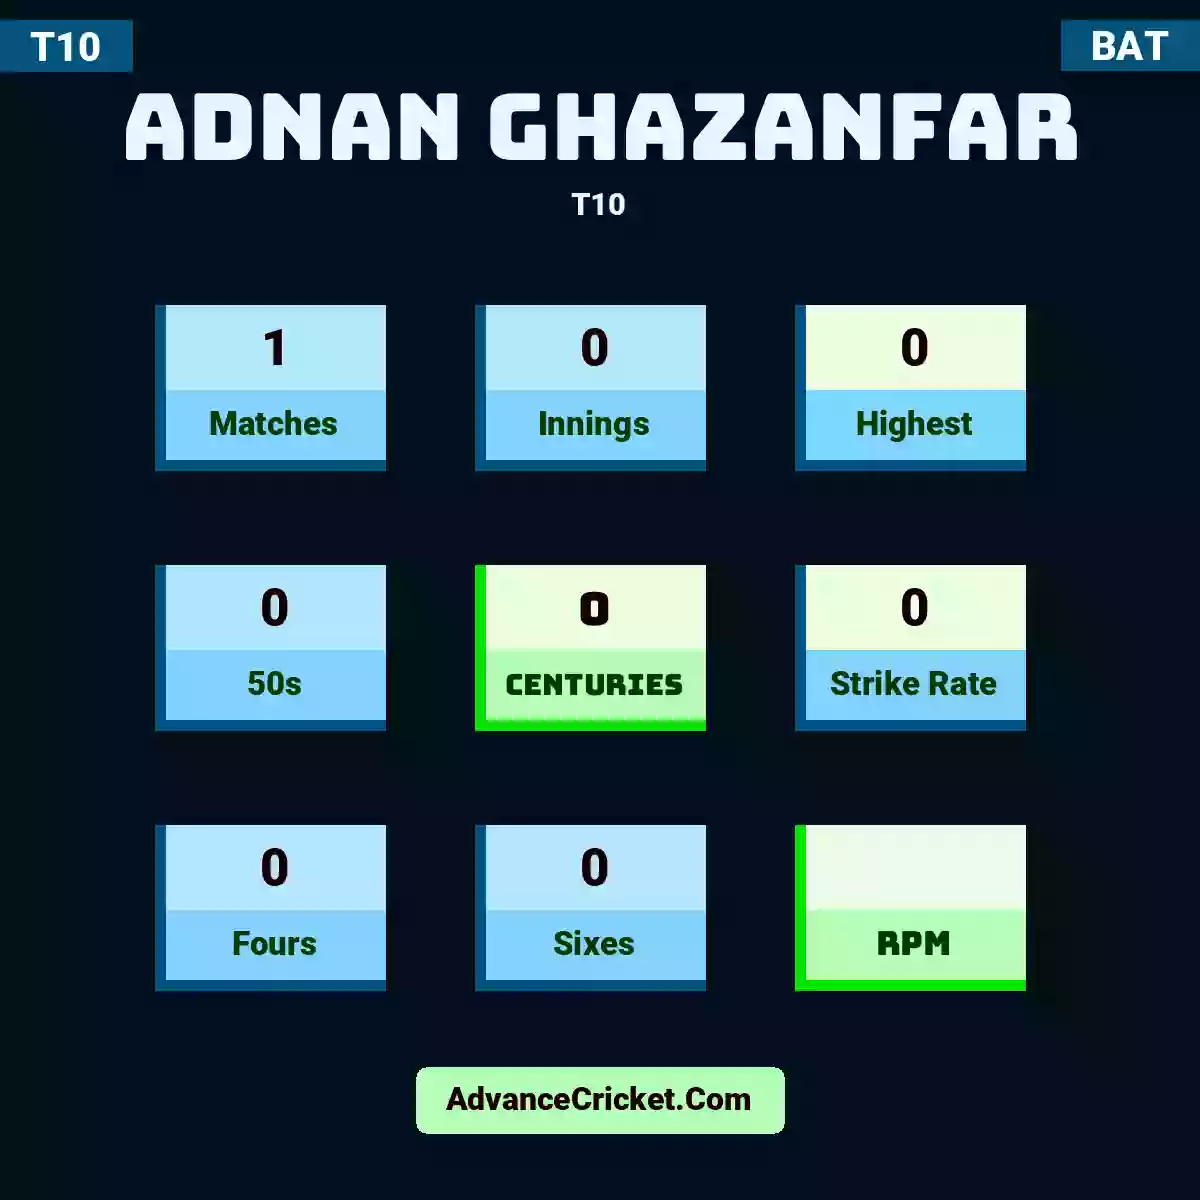 Adnan Ghazanfar T10 , Adnan Ghazanfar played 1 matches, scored 0 runs as highest, 0 half-centuries, and 0 centuries, with a strike rate of 0. A.Ghazanfar hit 0 fours and 0 sixes.